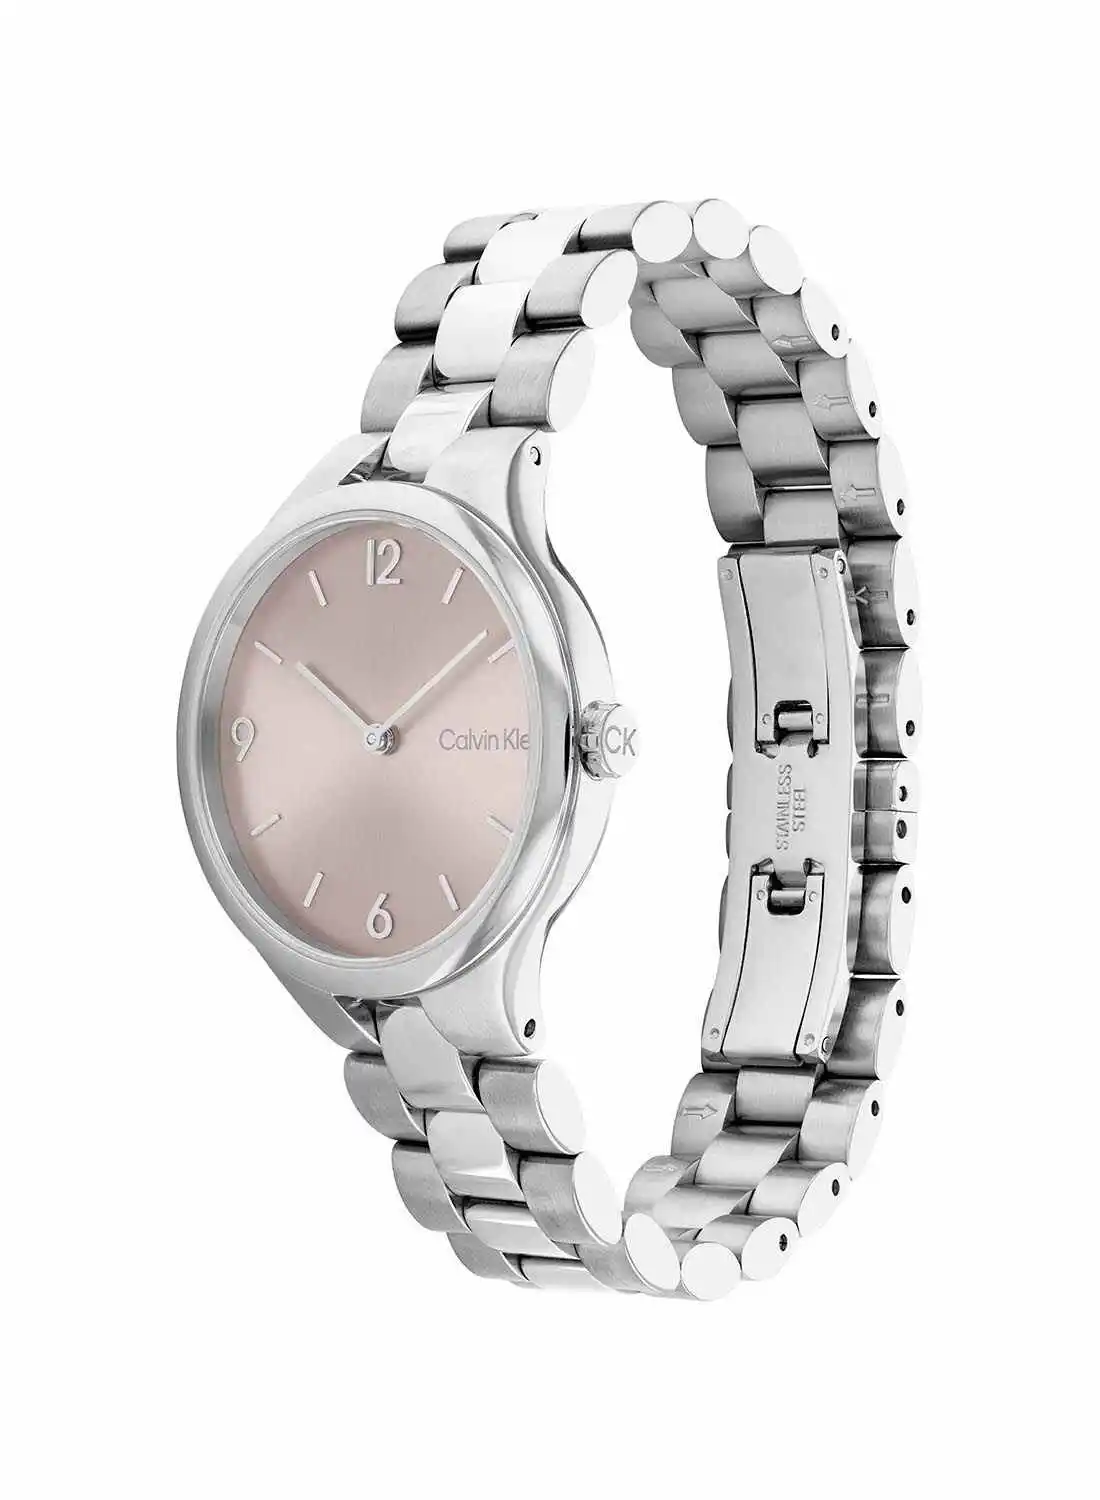 CALVIN KLEIN Linked Bracelet 32mm Women's Stainless Steel Watch 25200129